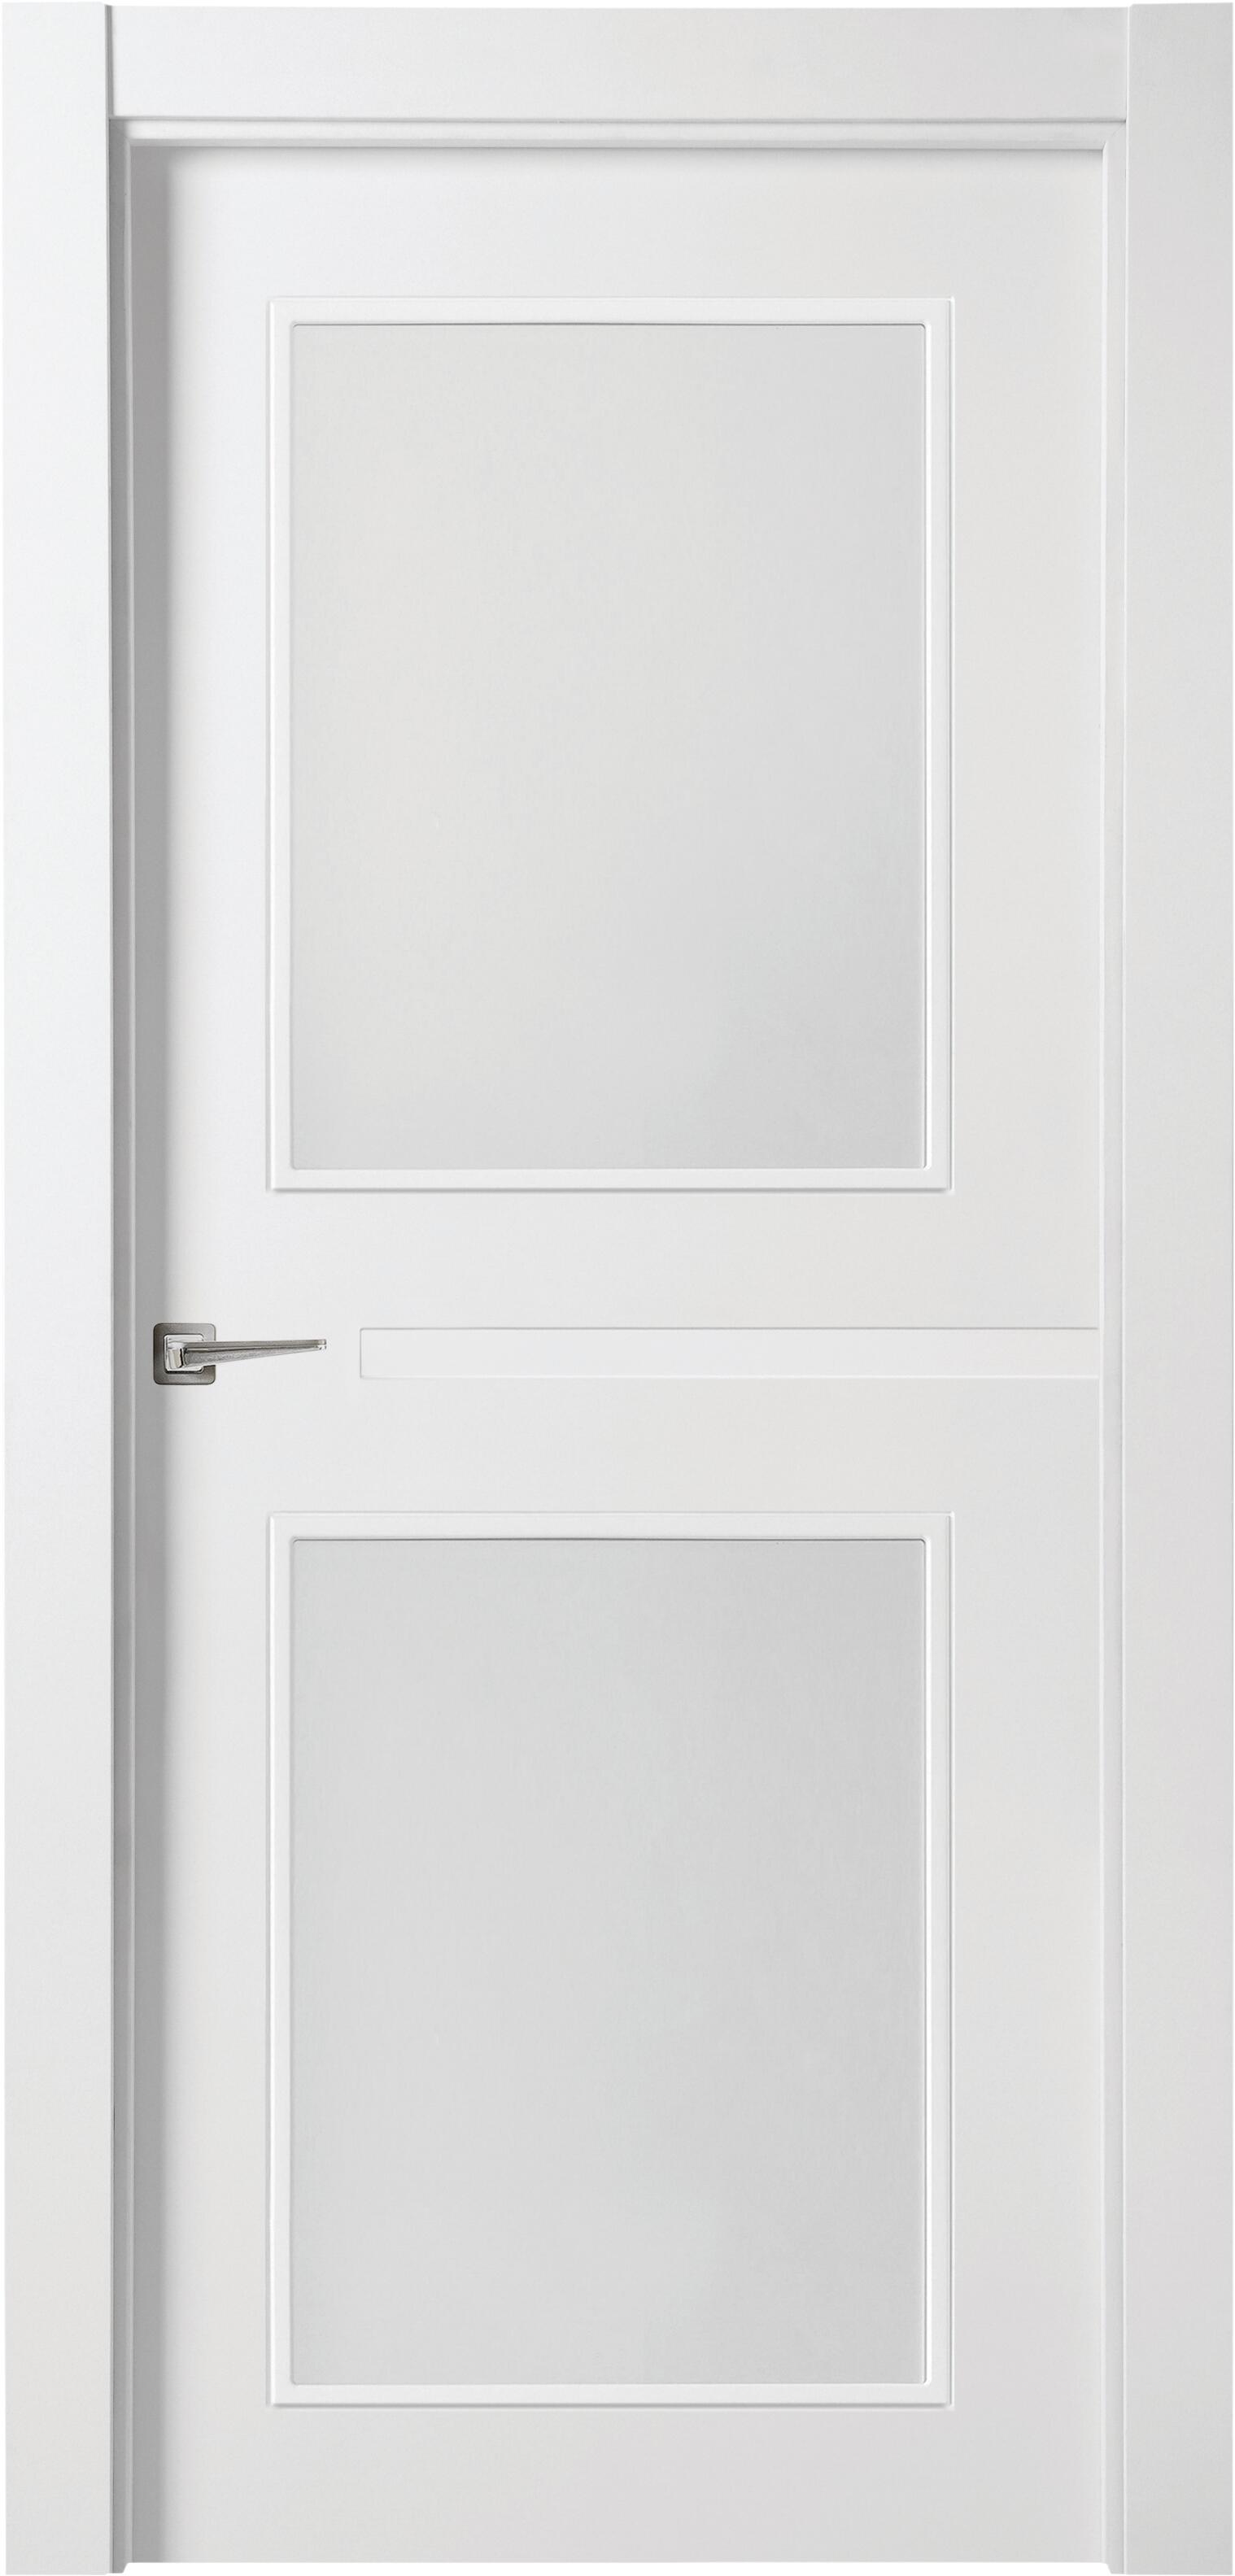 Puerta denver blanco apertura derecha con cristal de 9x72,5cm